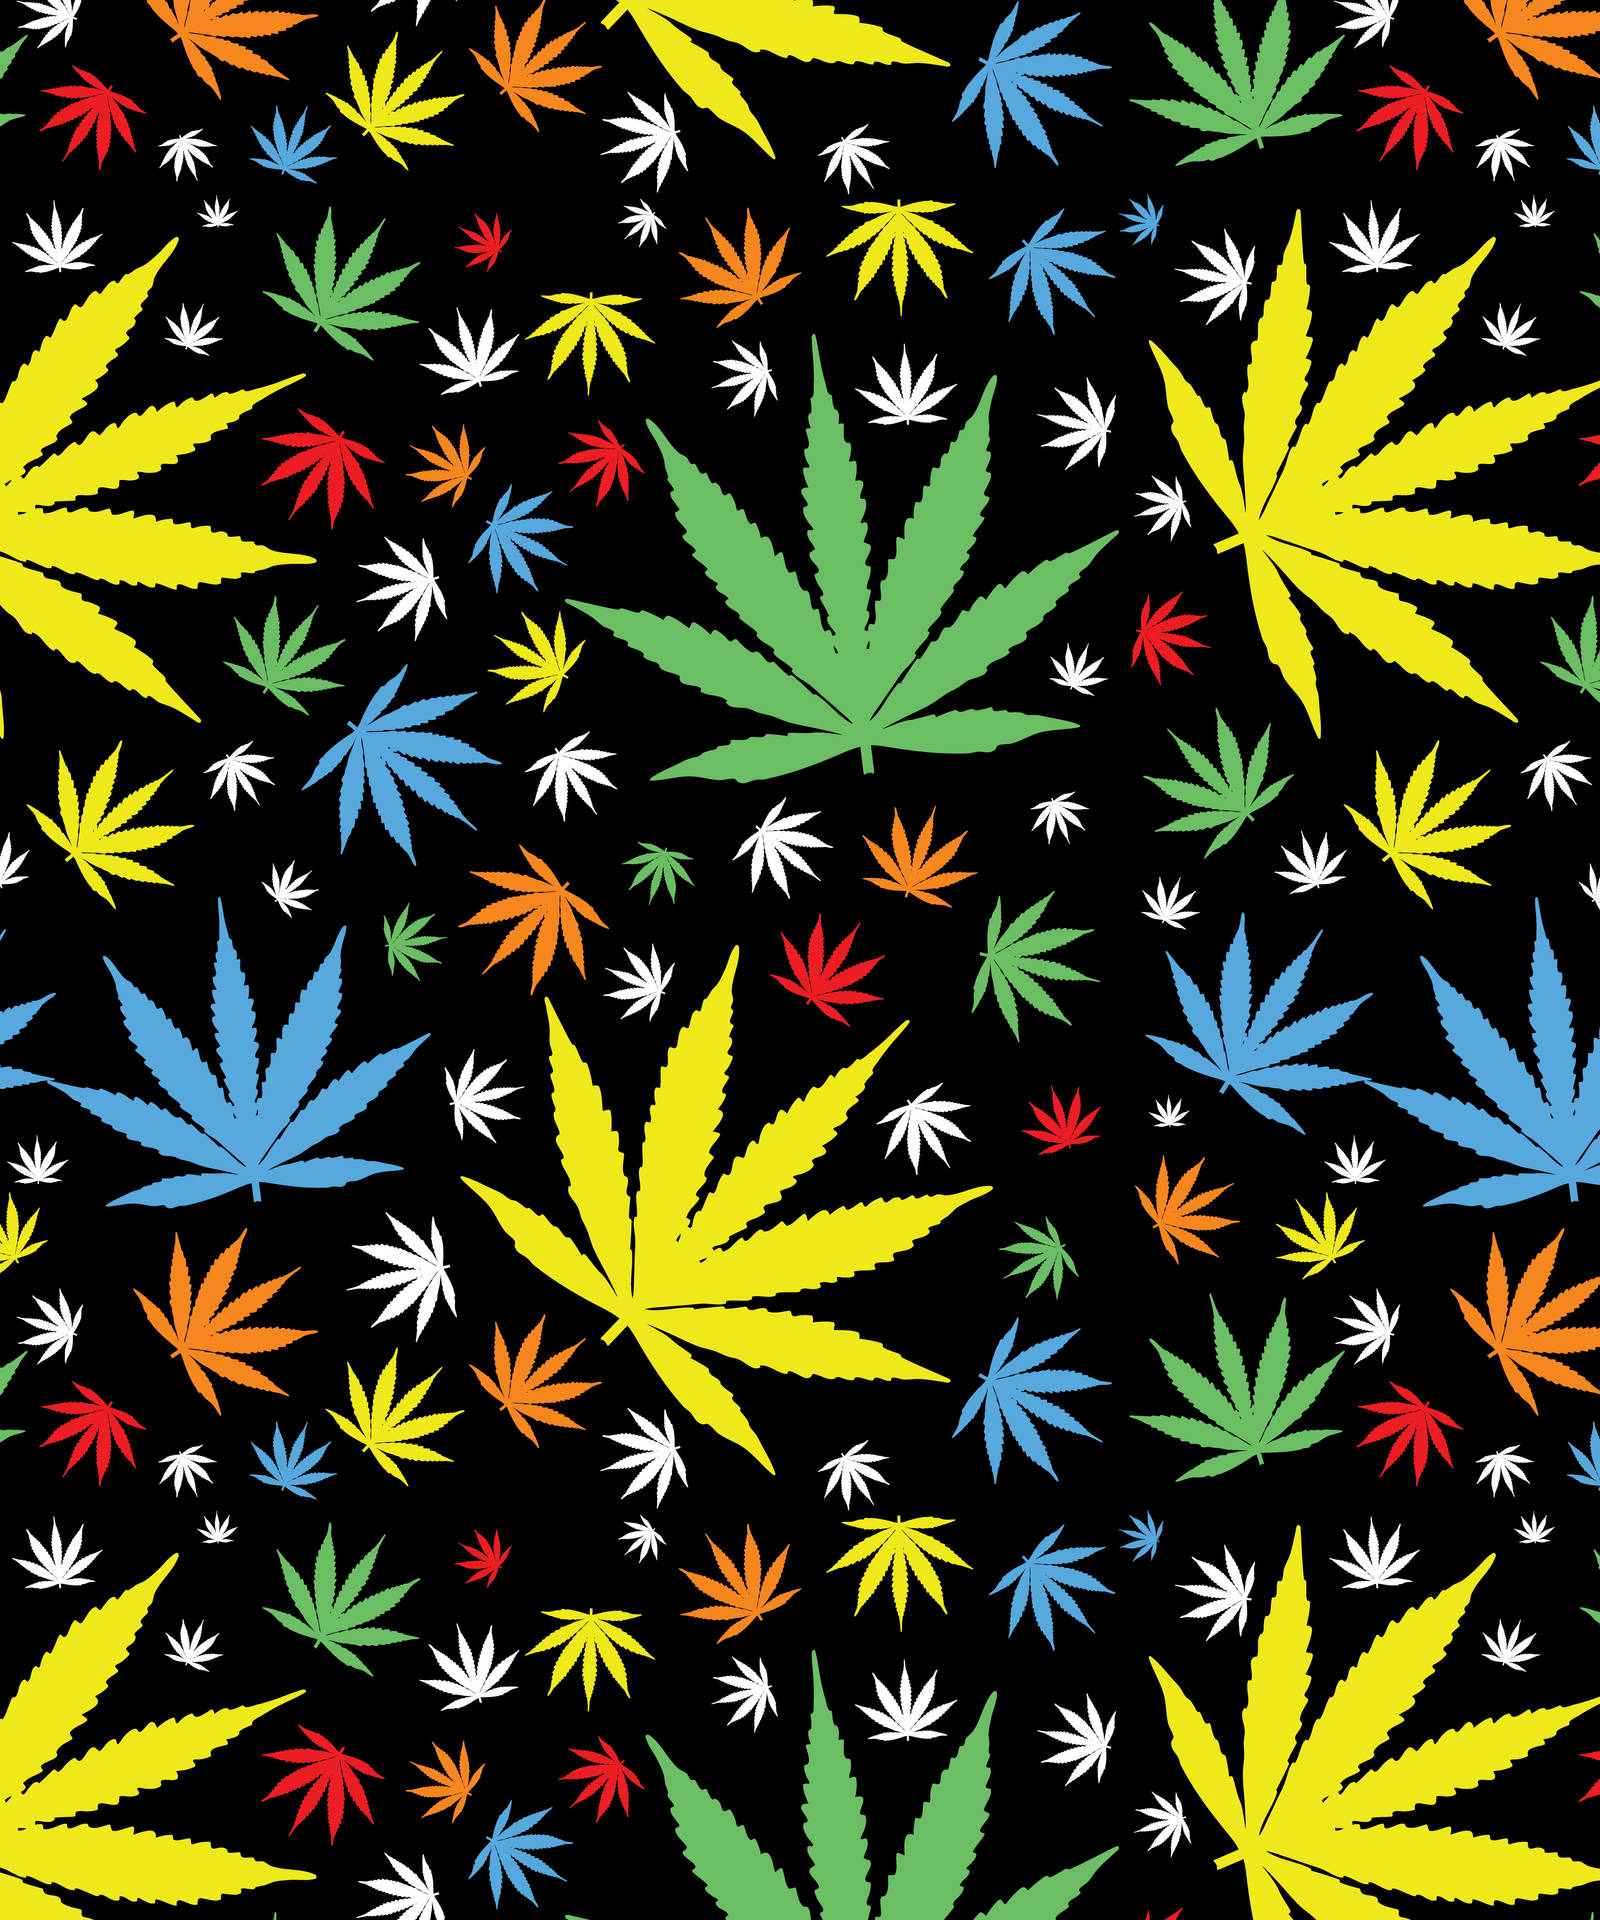 Buntegrafiken Mit Cannabisblatt Wallpaper